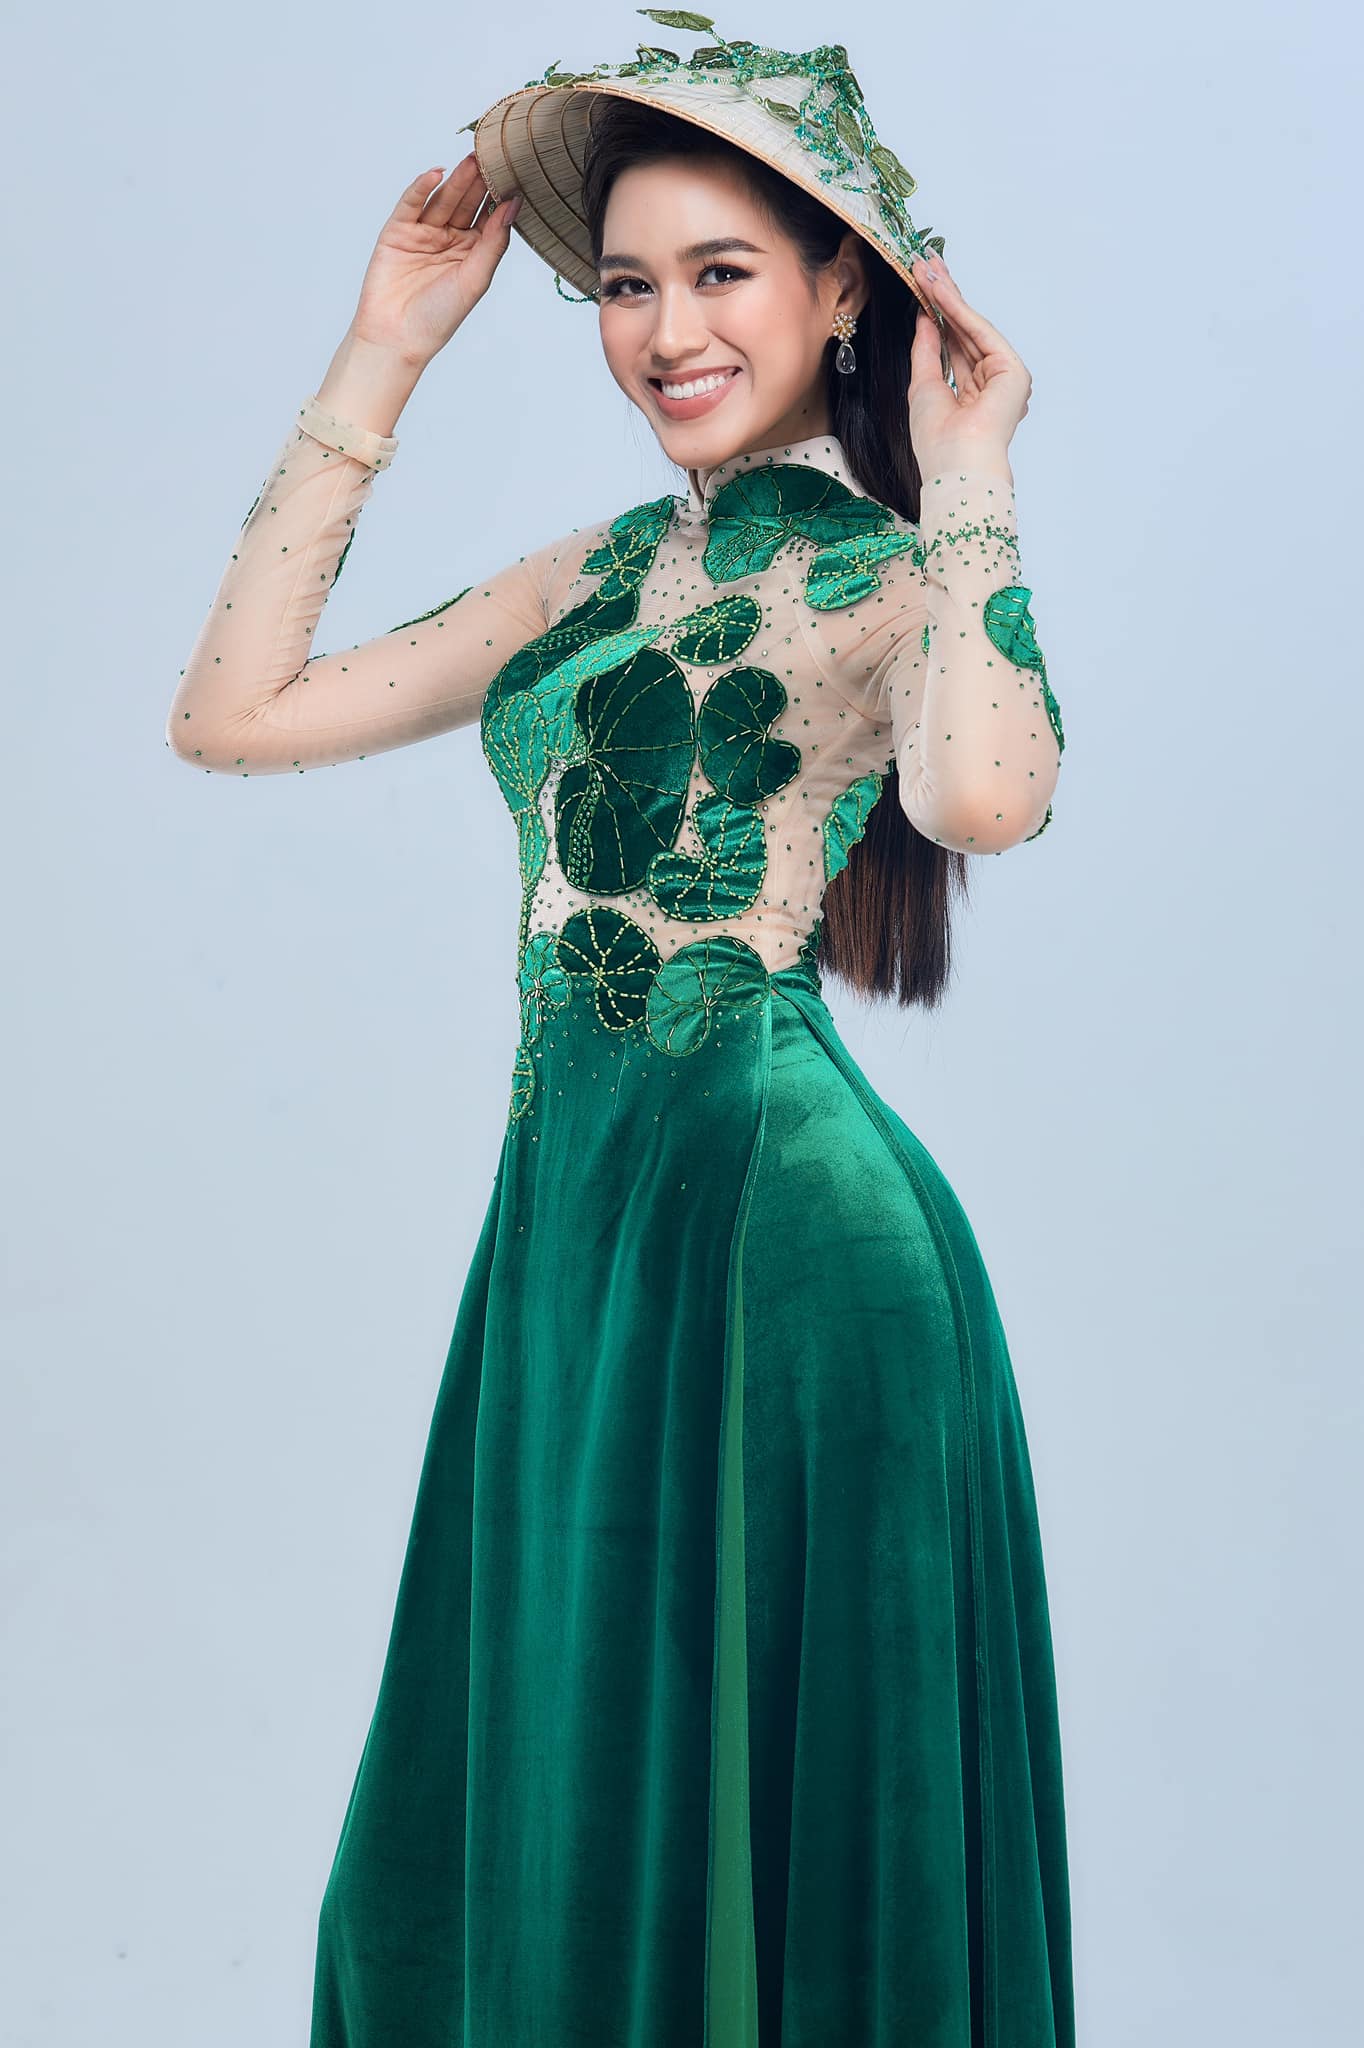 Đỗ Thị Hà gặp trục trặc tại phần thi giành vé vào Top 12 Miss World 2021 - Ảnh 2